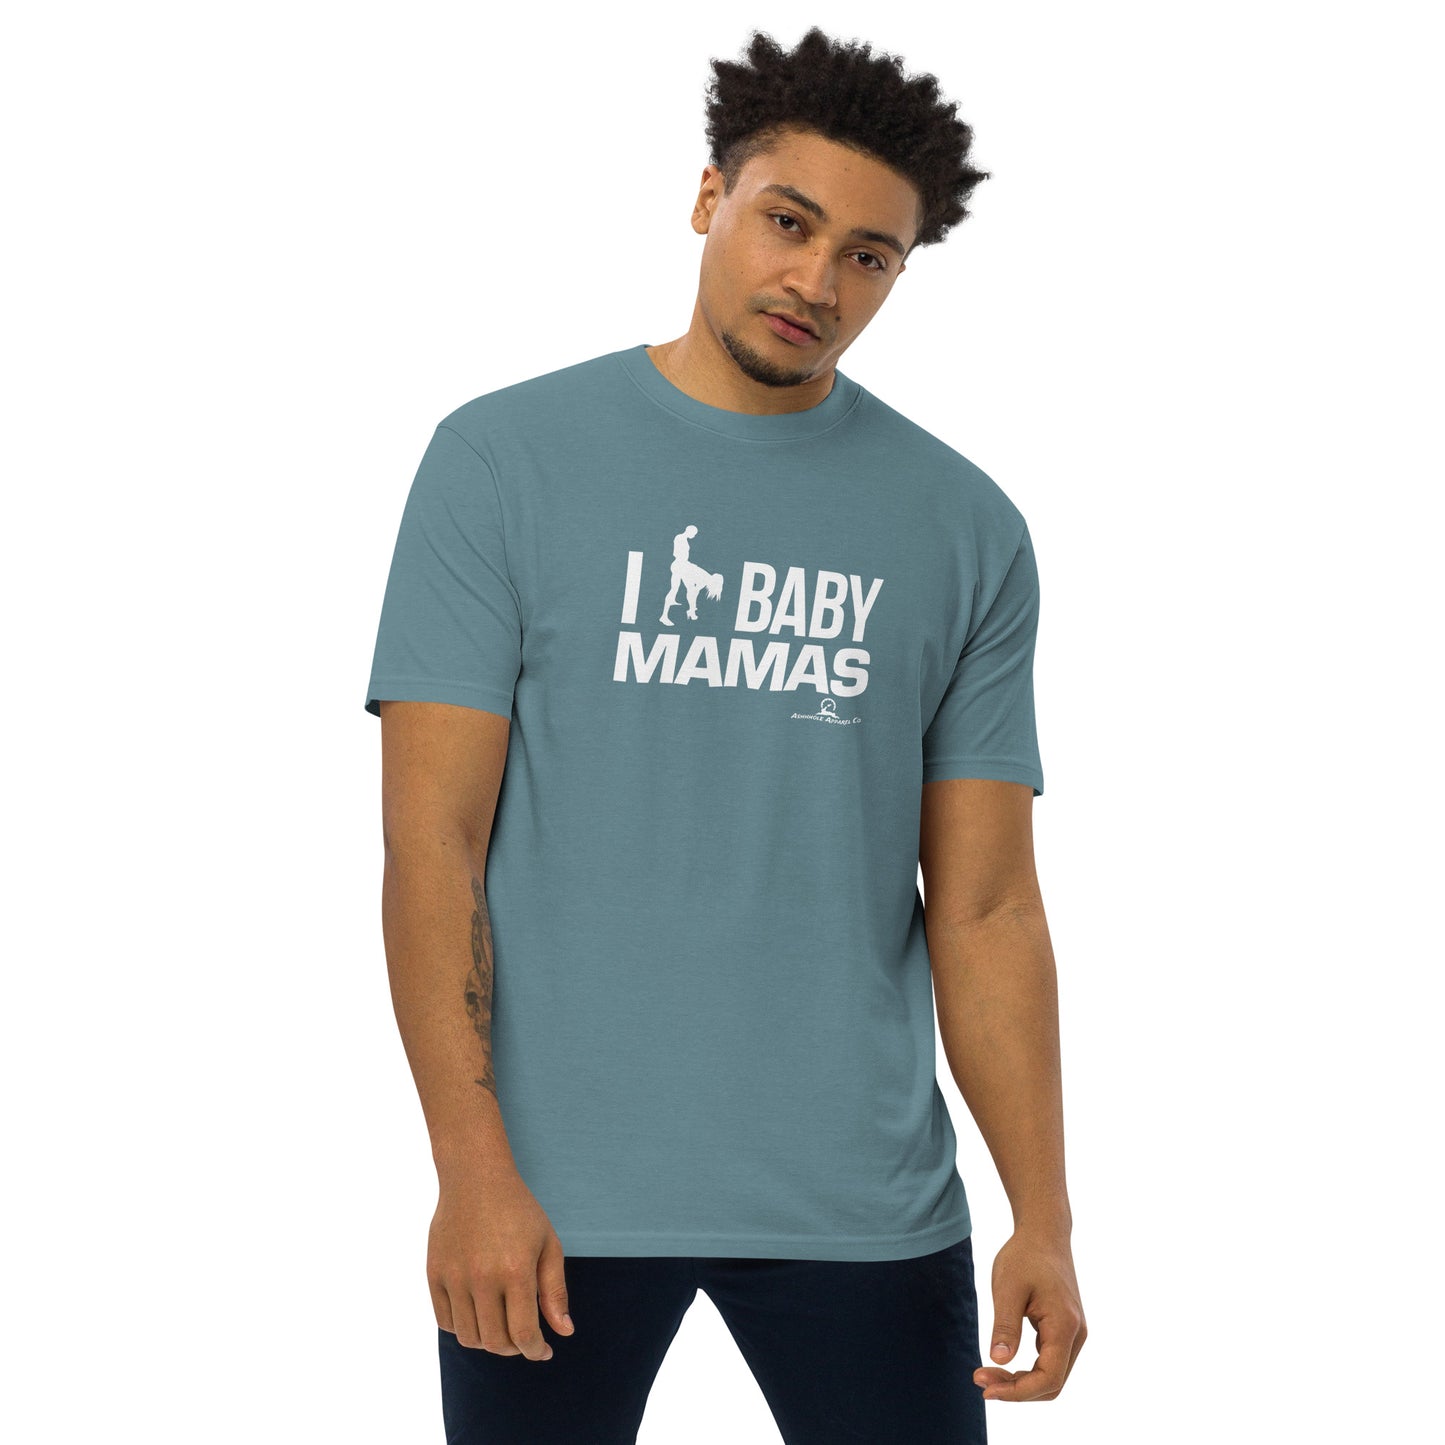 "I ** Baby Mamas" Men’s premium heavyweight tee